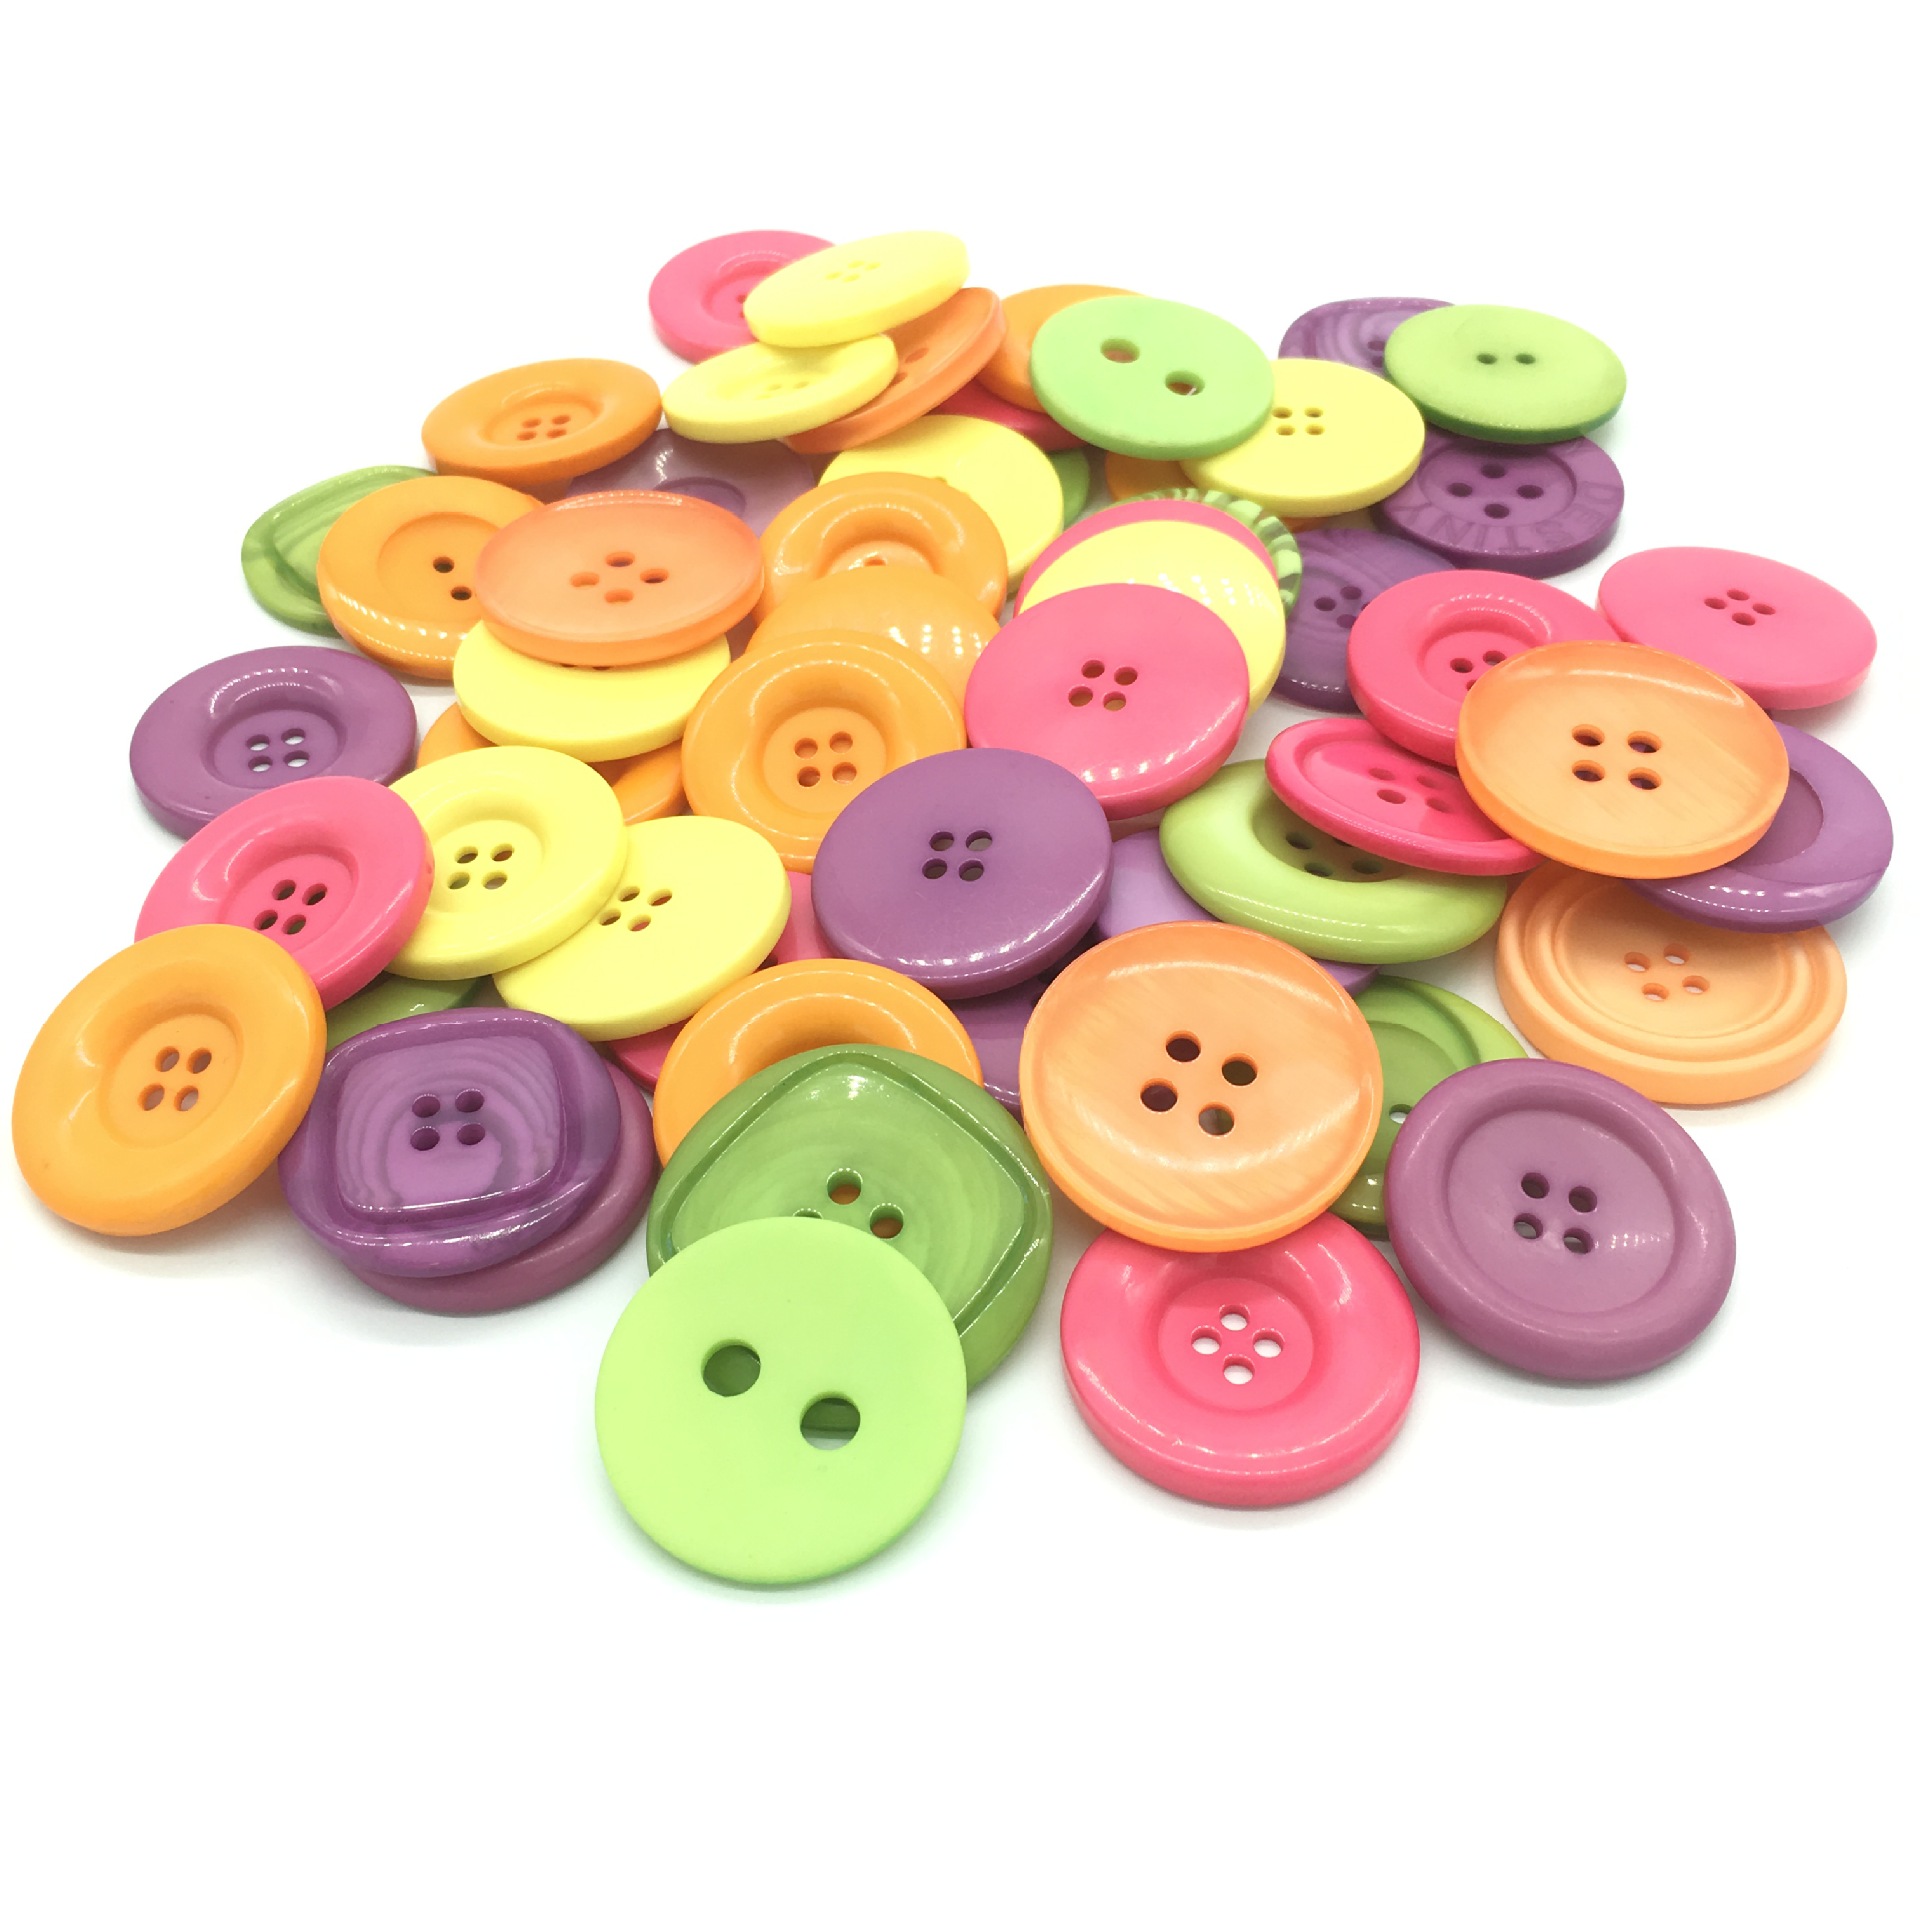 纽扣粘贴画儿童手工DIY材料包 民族系列 益智玩具创意钮扣装饰画-阿里巴巴